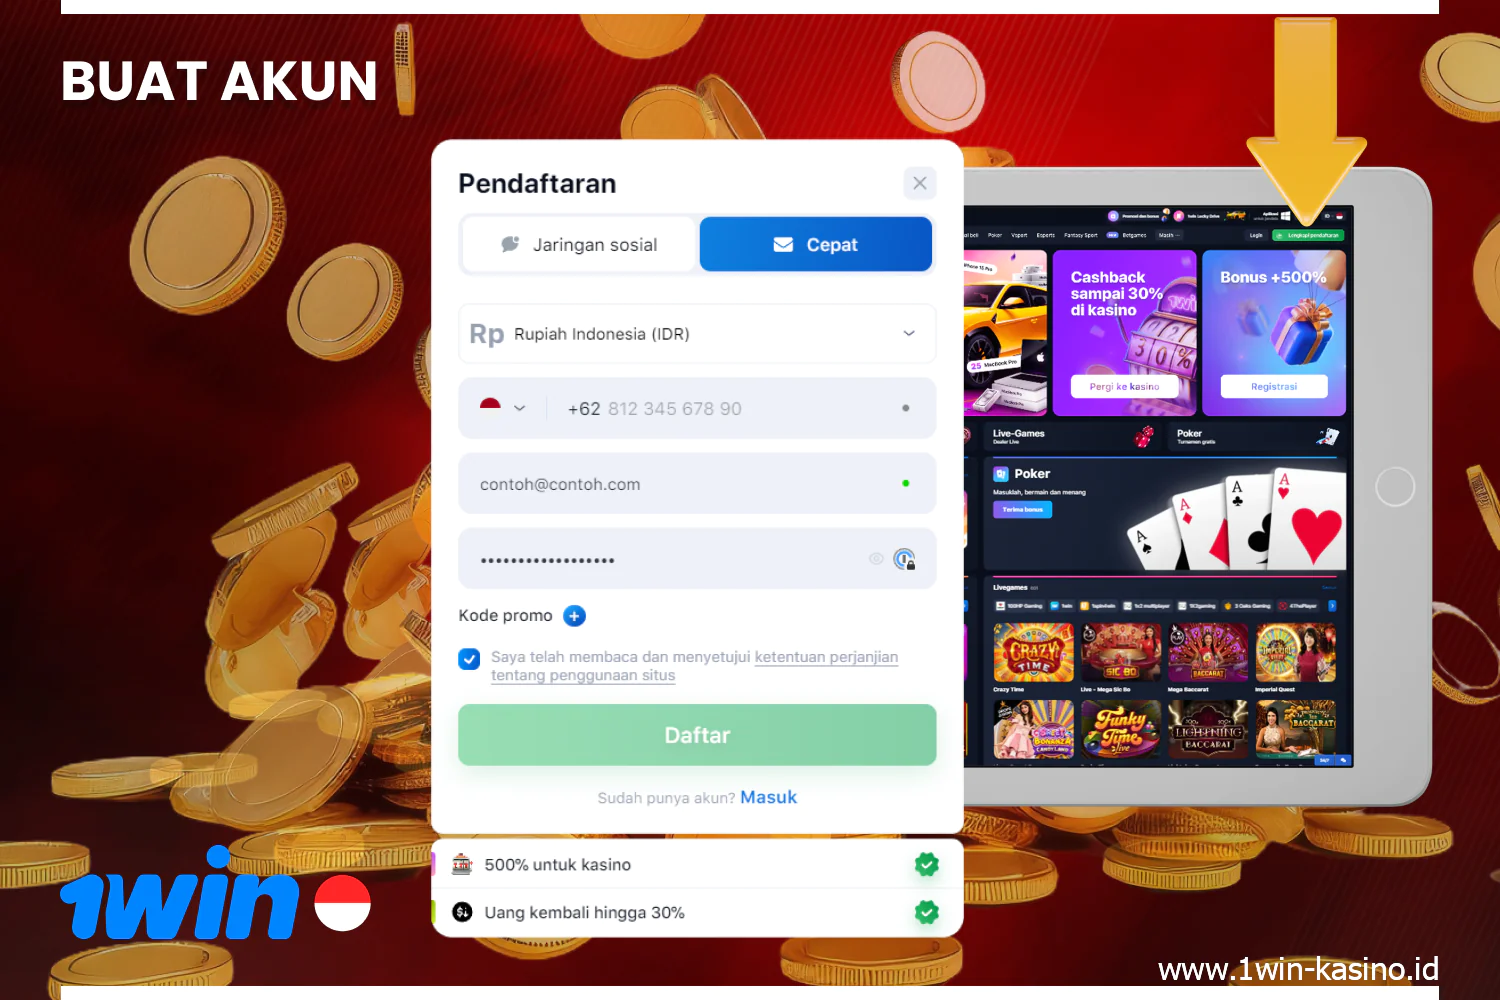 Pengguna 1win Indonesia dapat mulai bertaruh setelah mendaftar